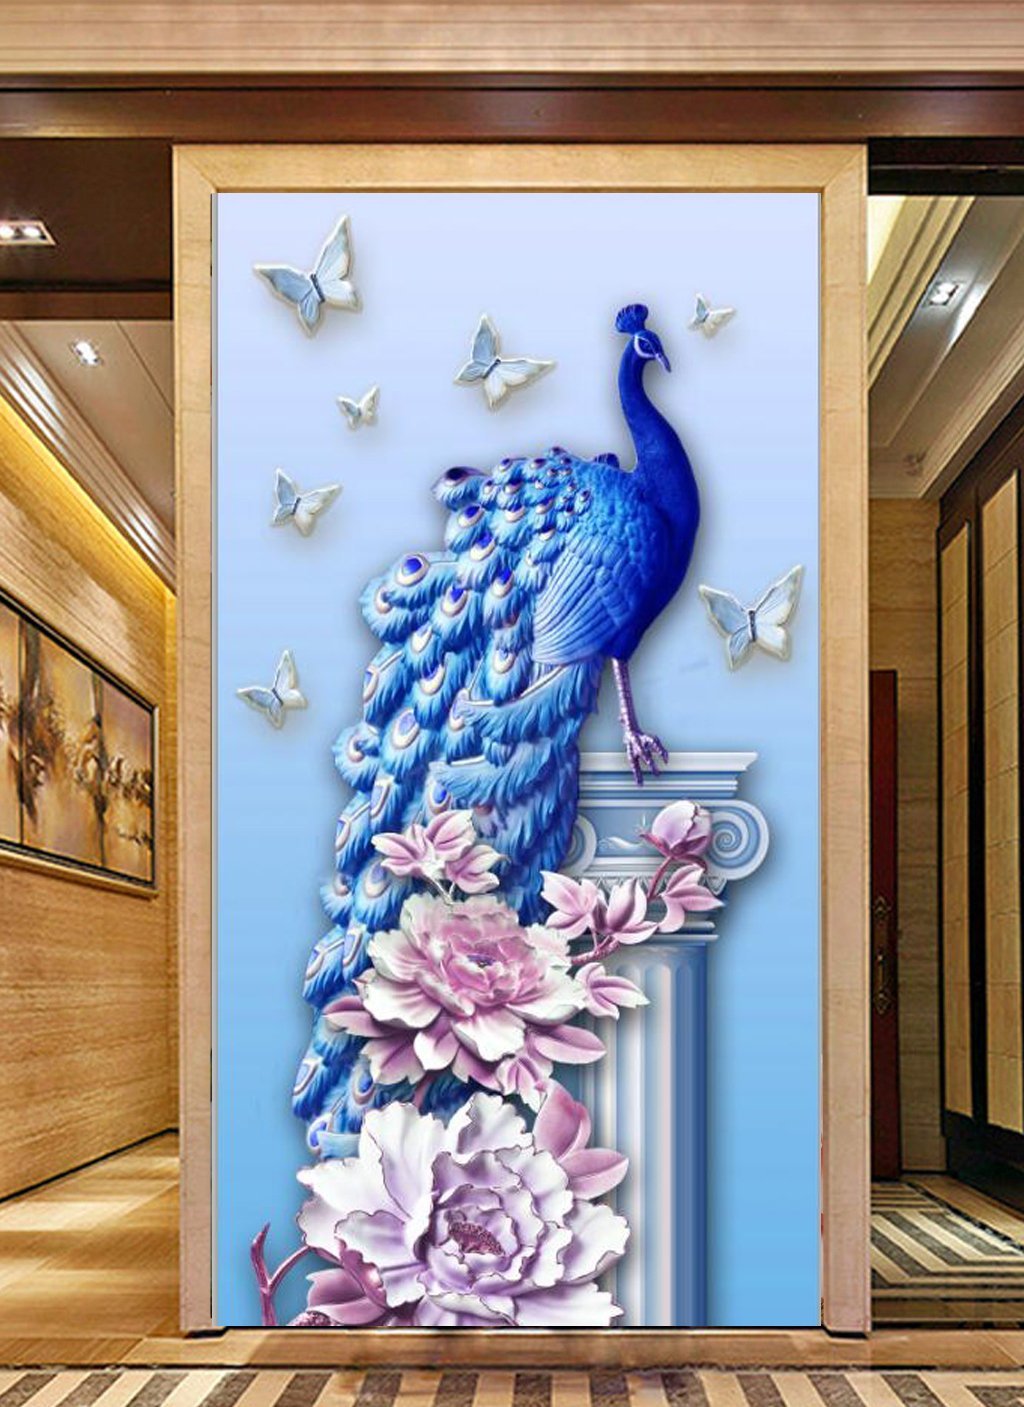 3D Butterfly Peacock 498 Wall Murals Wallpaper AJ Wallpaper 2 